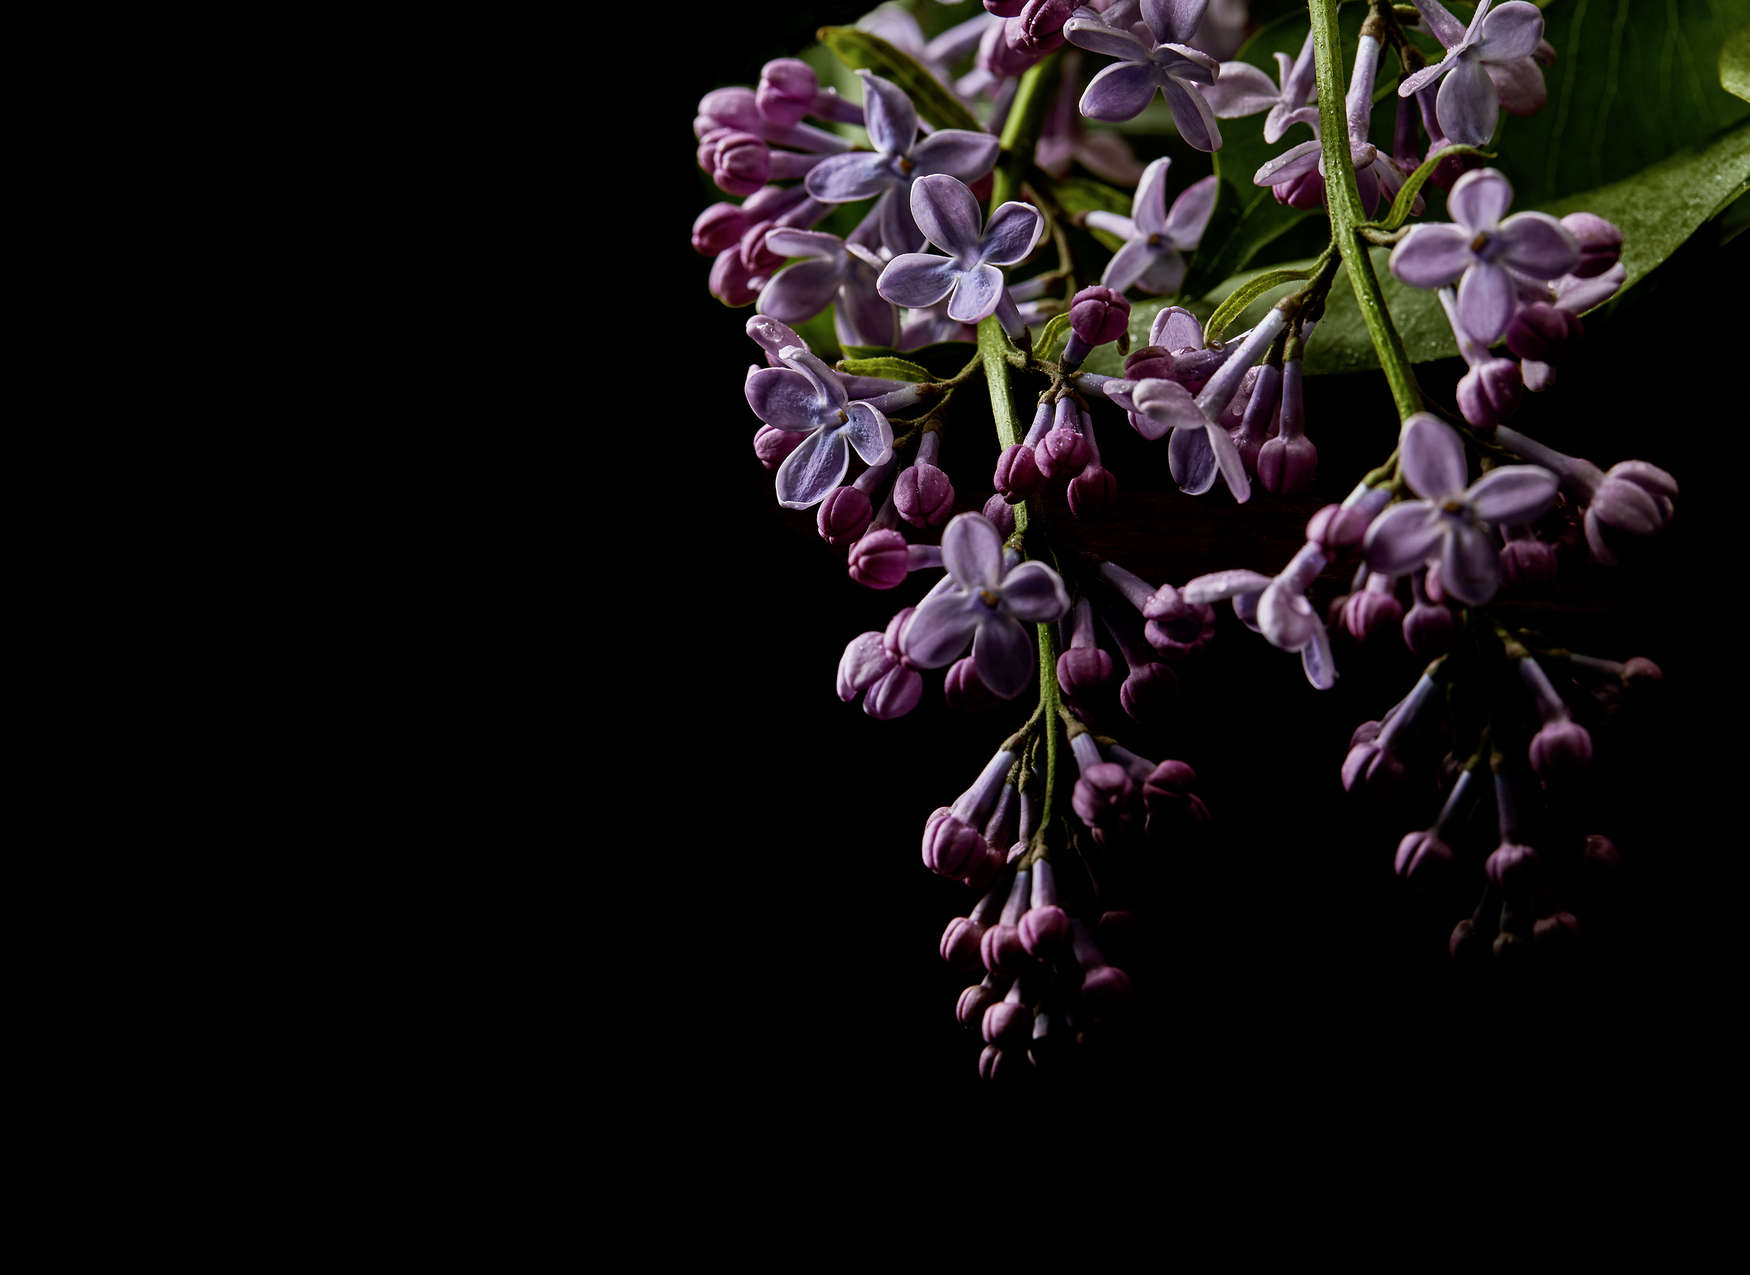             Fototapete Blüten auf schwarzen Hintergrund Close-Up – Lila, Schwarz
        